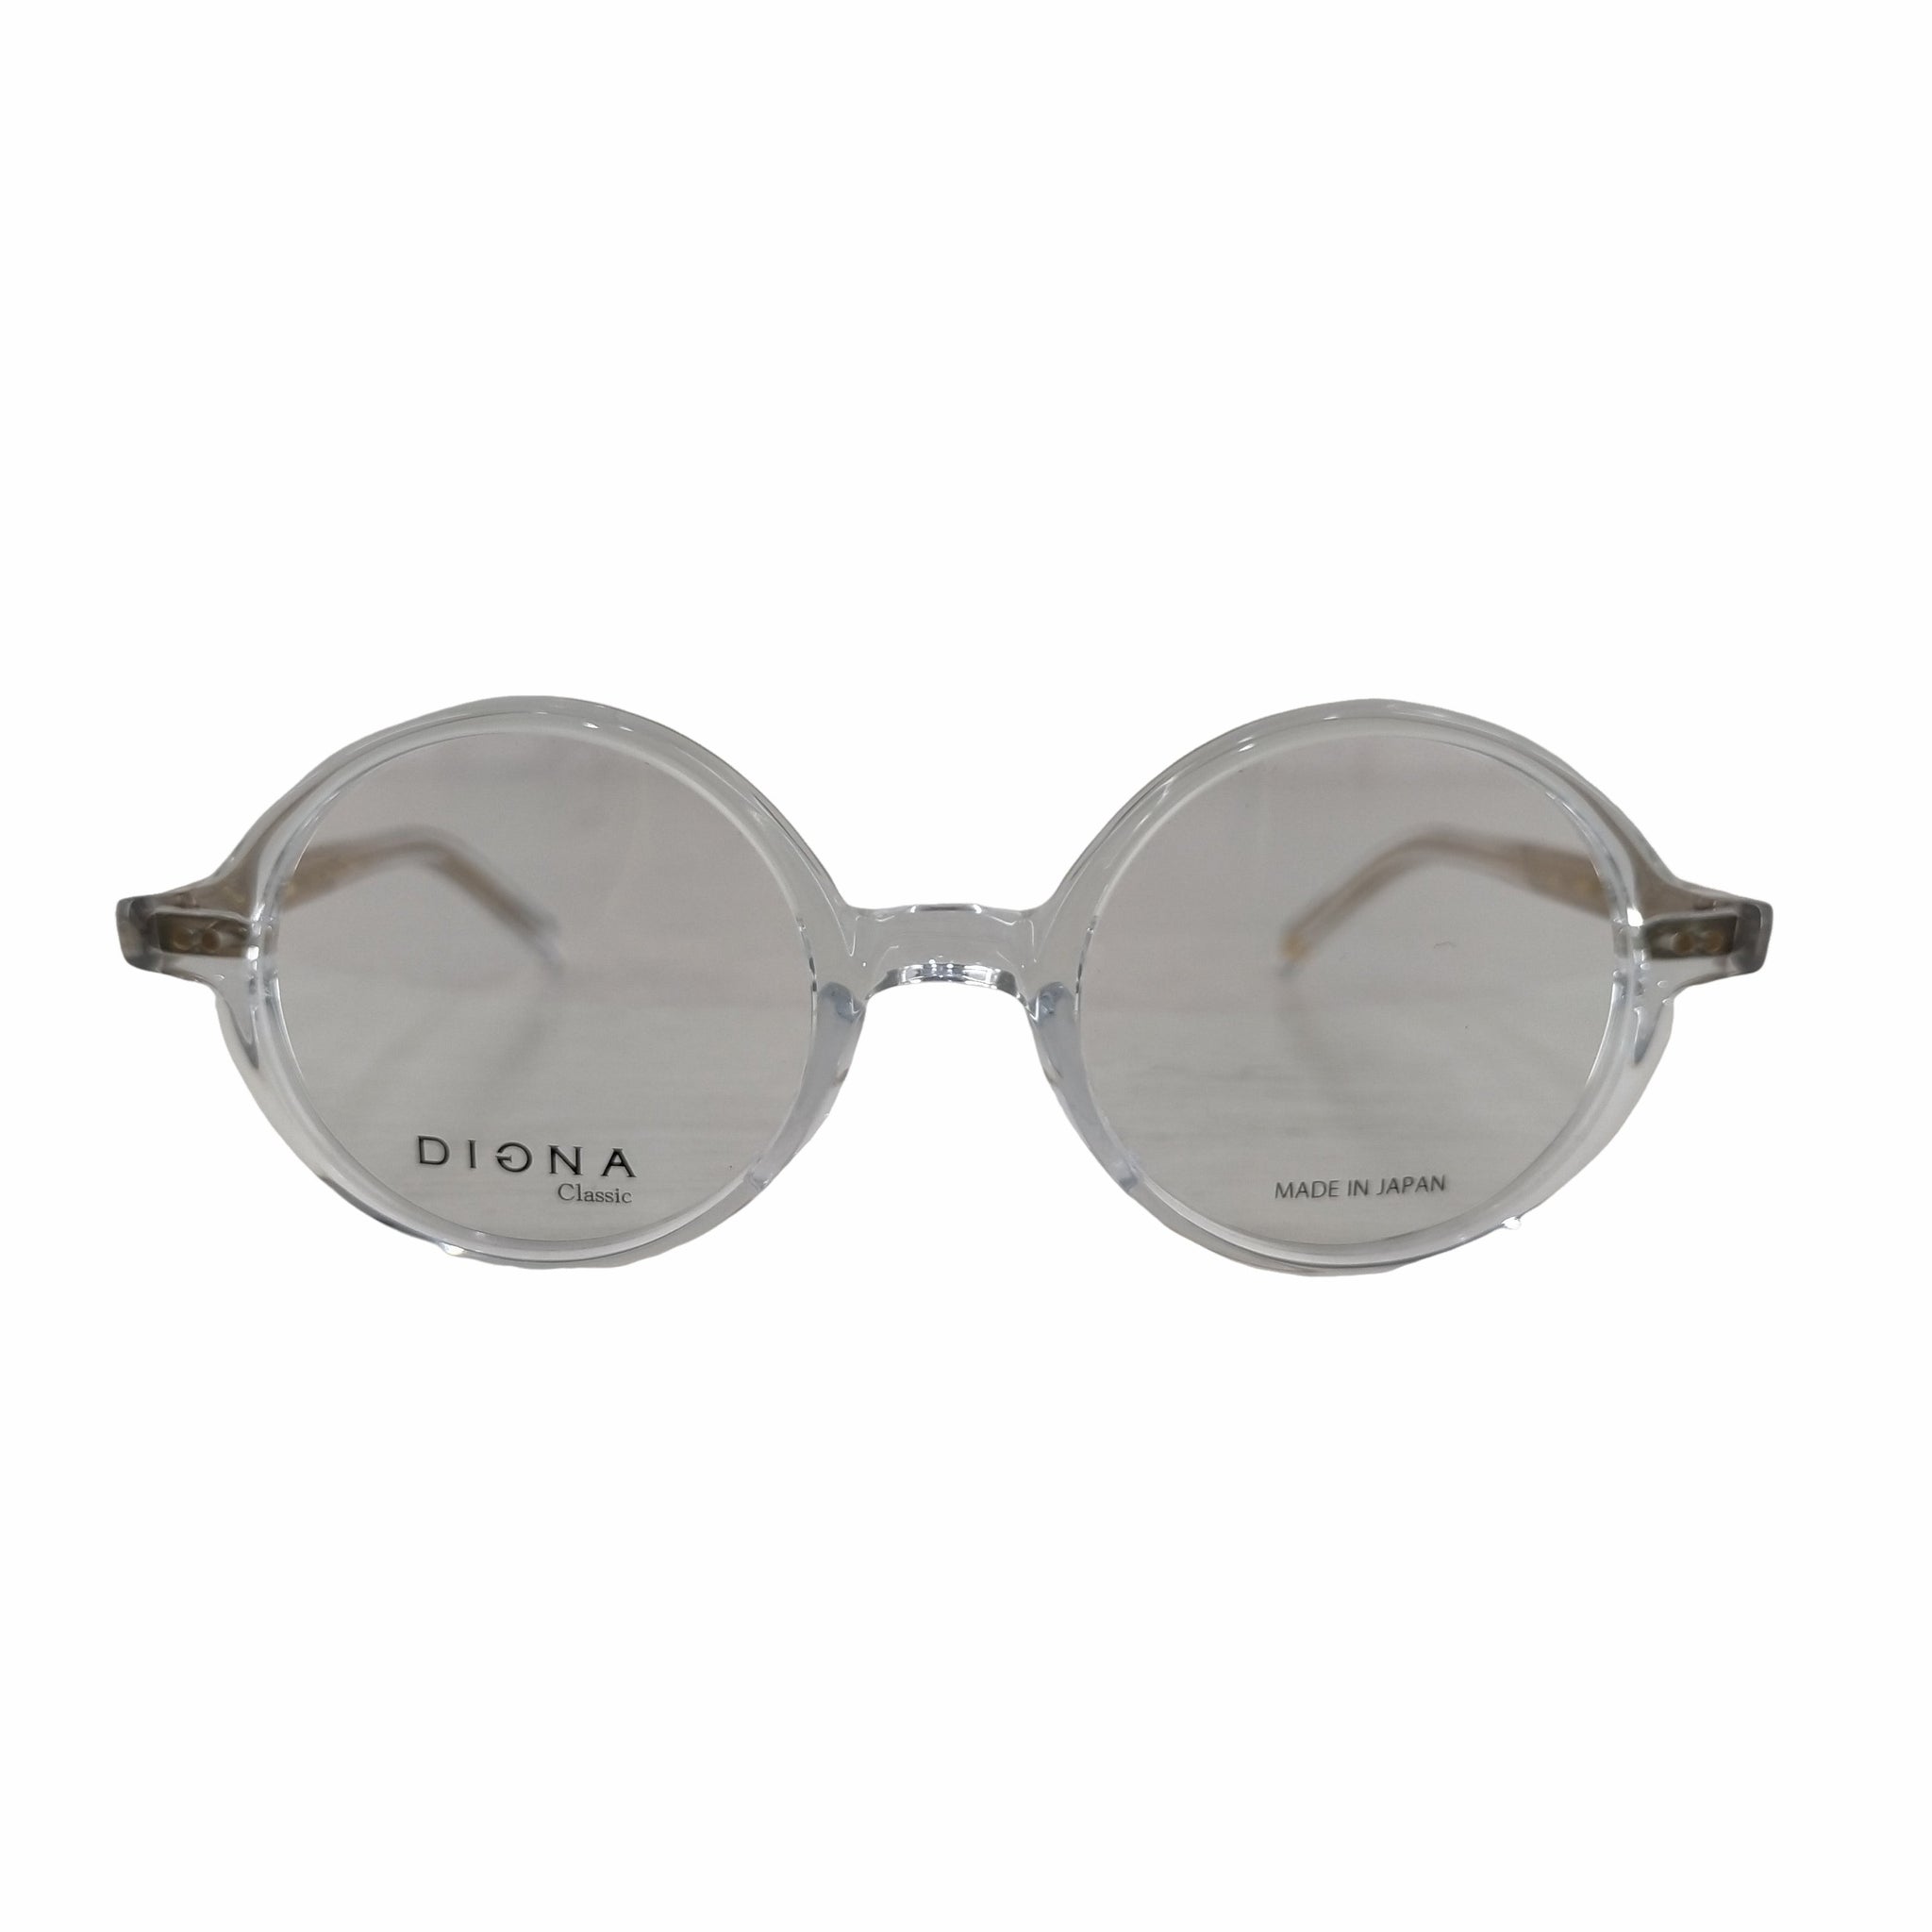 DIGNA Classic(ディグナクラシック)124E ラウンド型 眼鏡